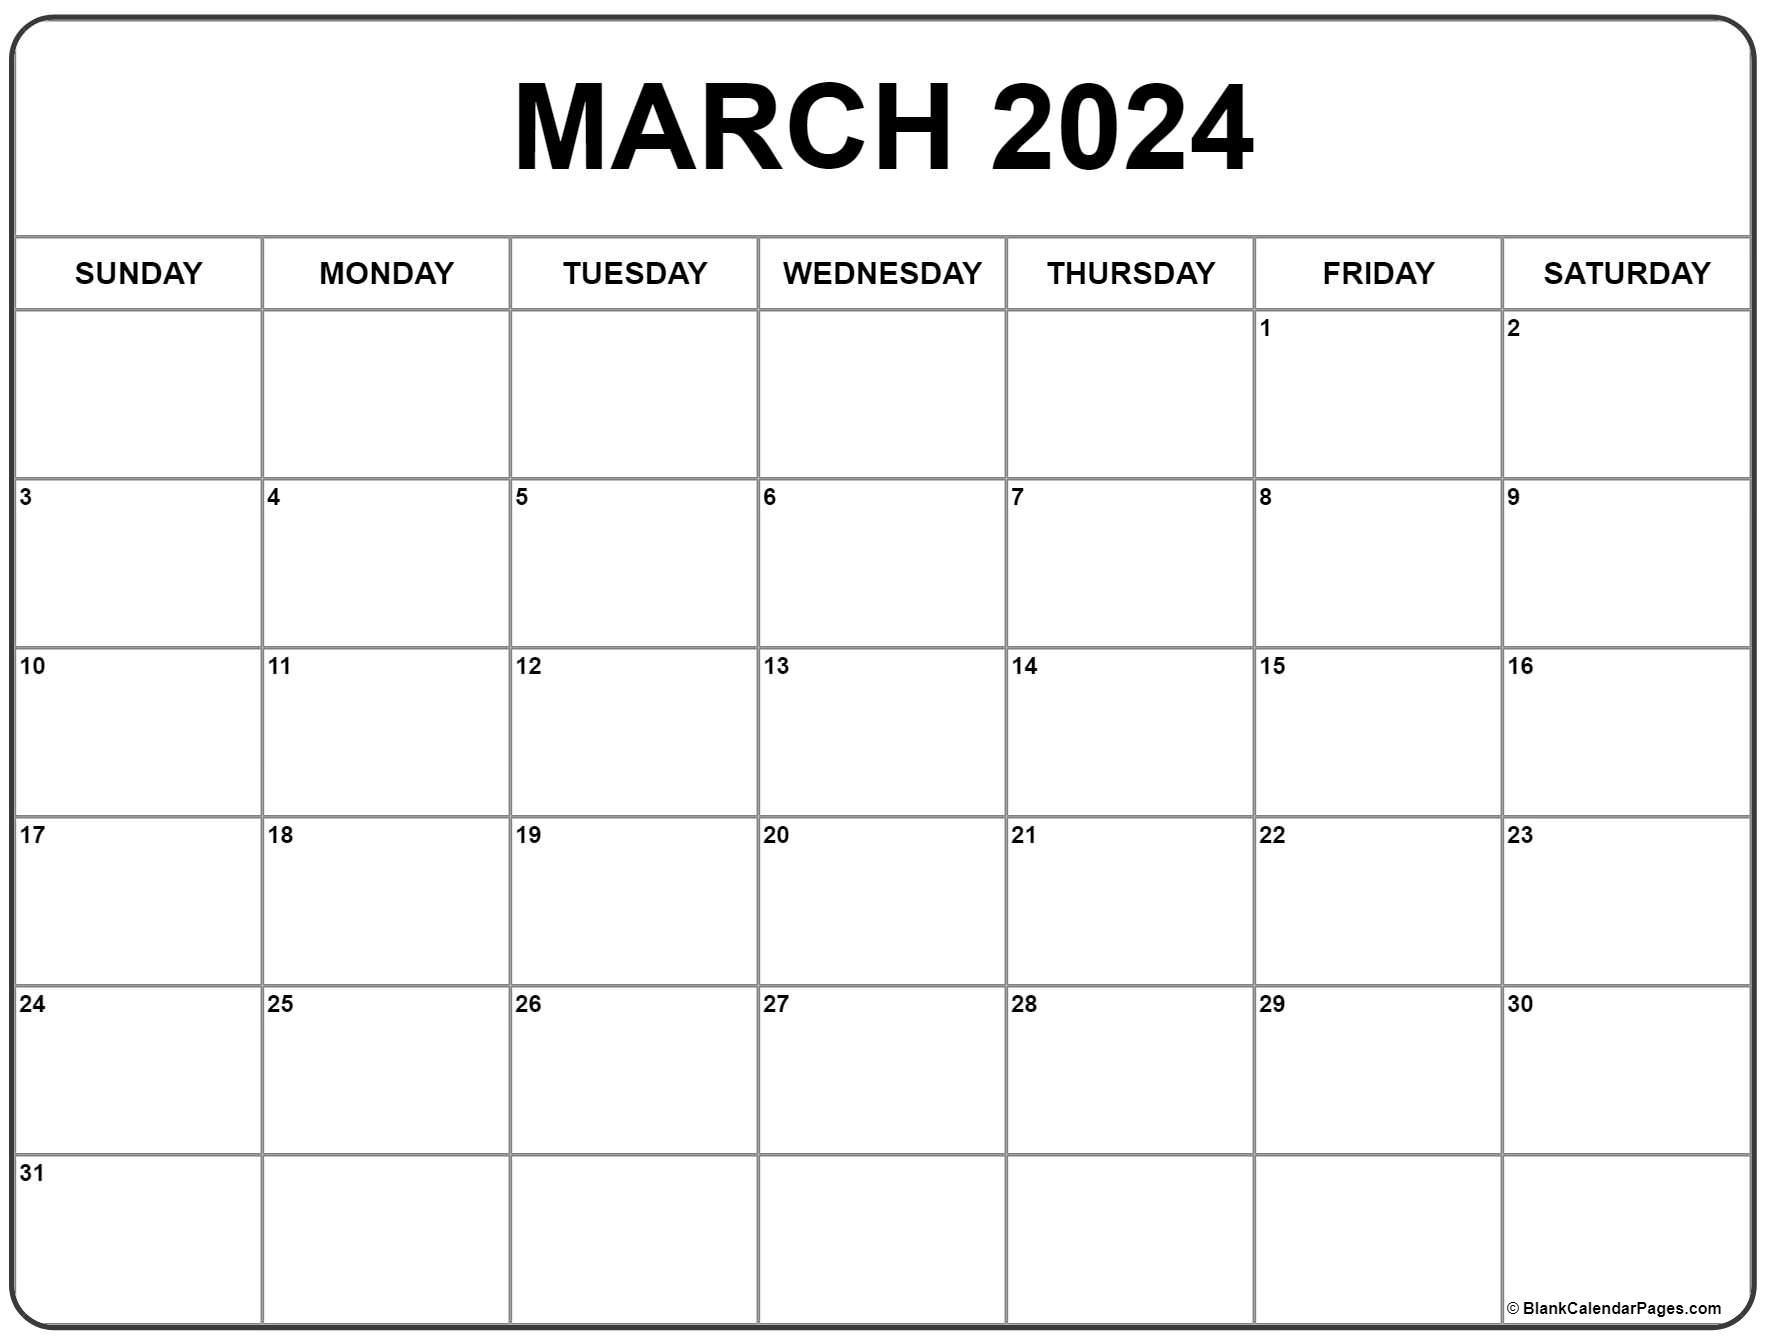 March 2024 Calendar | Free Printable Calendar for Calendar 2024 Printable March